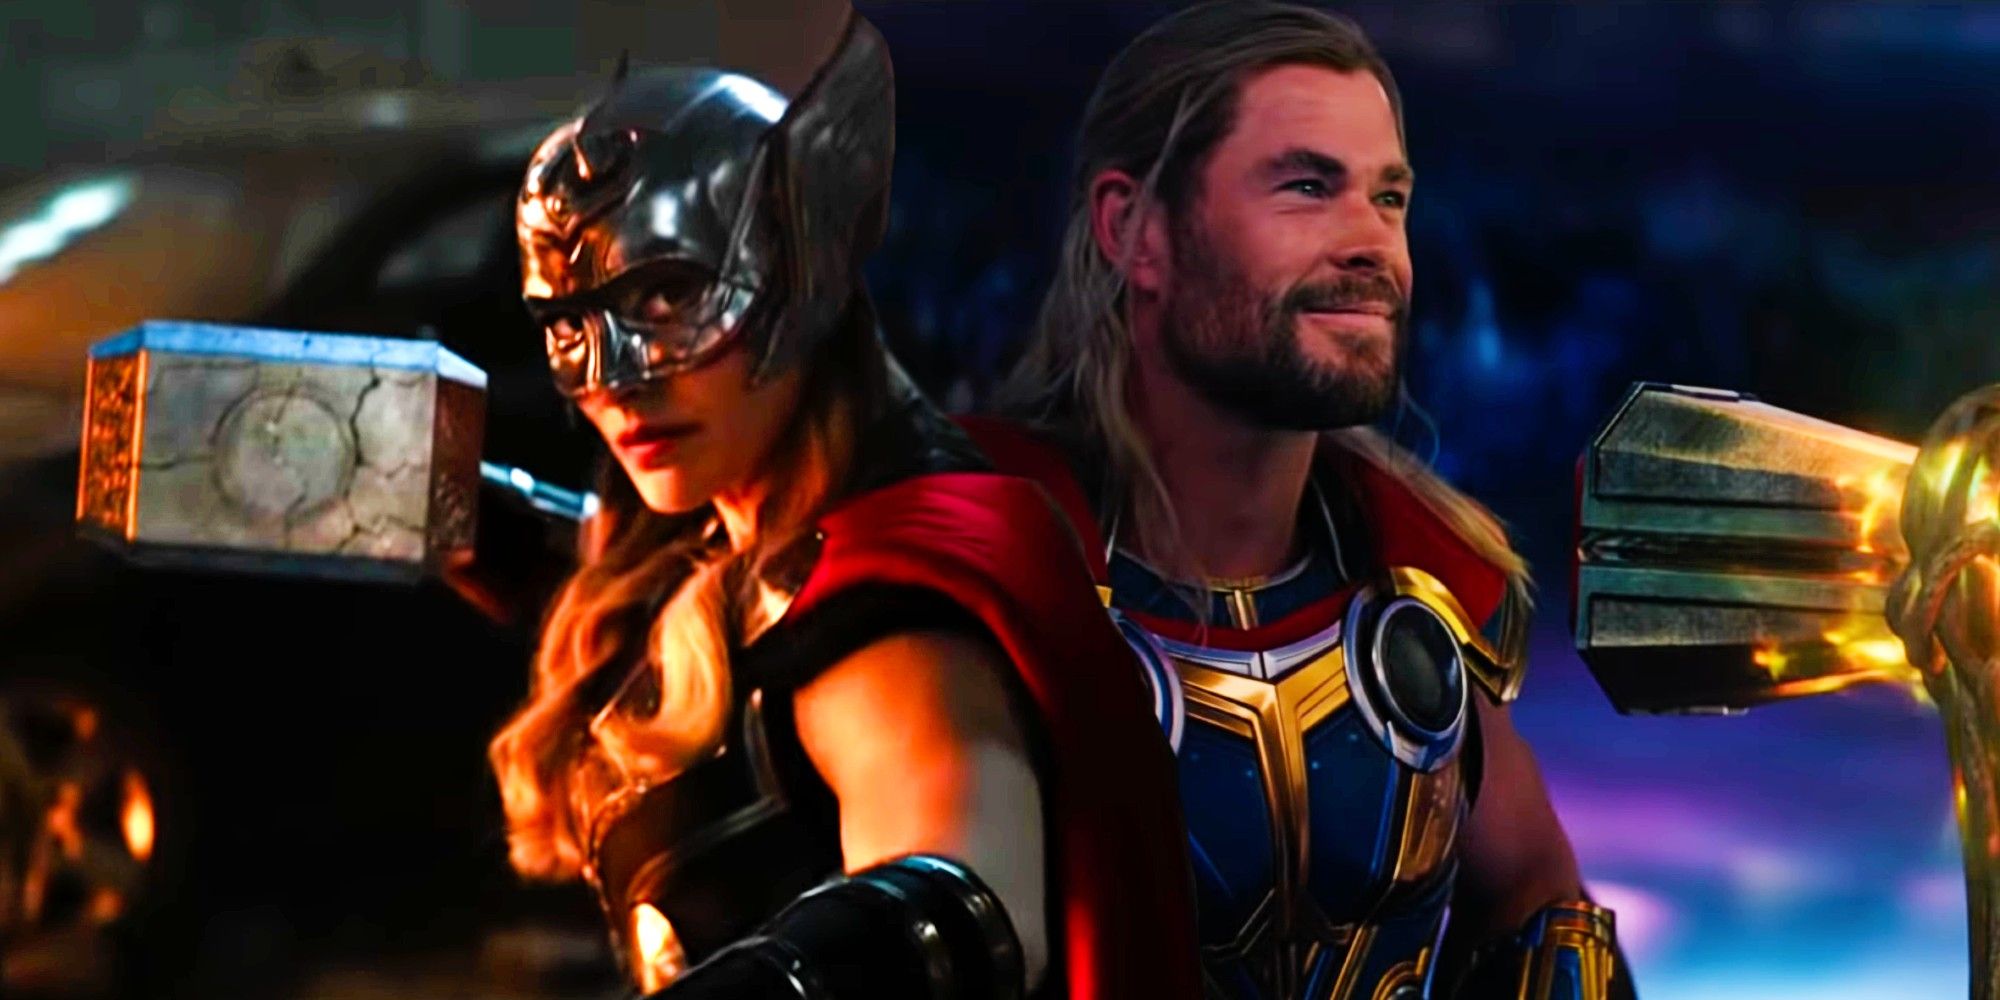 Thor: Love & Thunder Trailer Reveals Natalie Portman’s Thor & Mjolnir
Thor: Love & Thunder Avoids A Major Post-Endgame Fat Thor Mistake